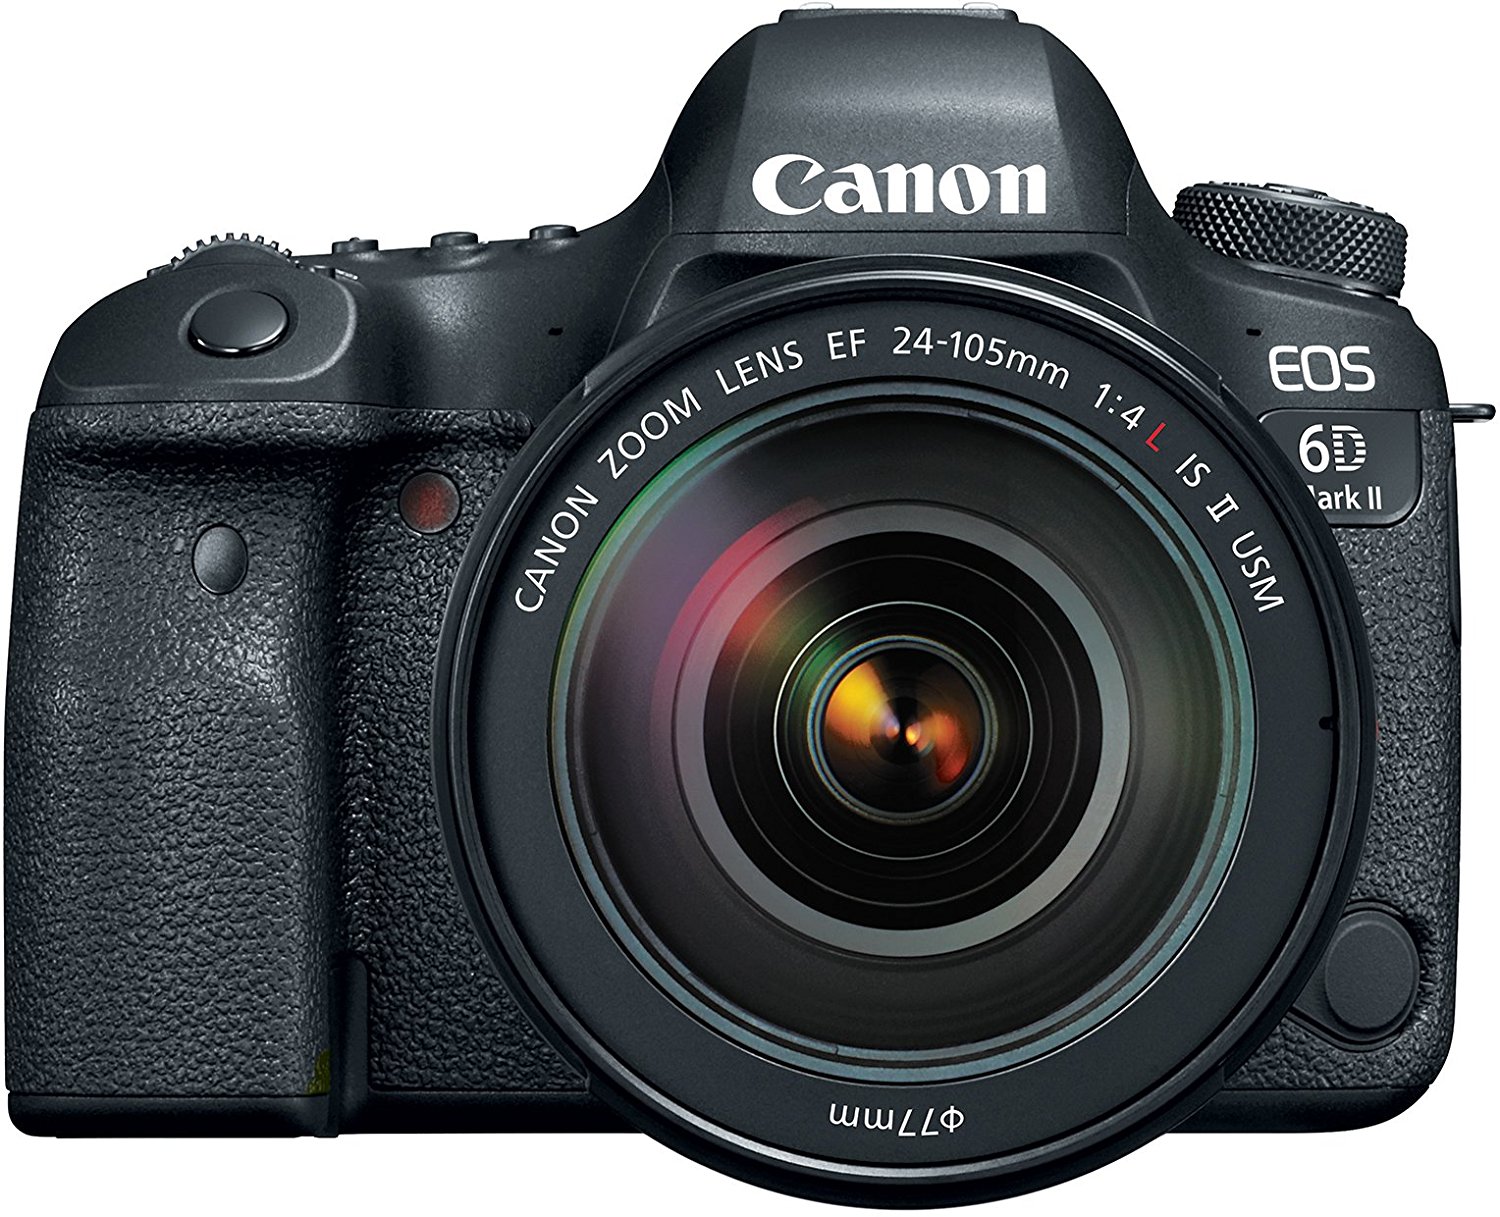 A Canon 6D MKII digital camera